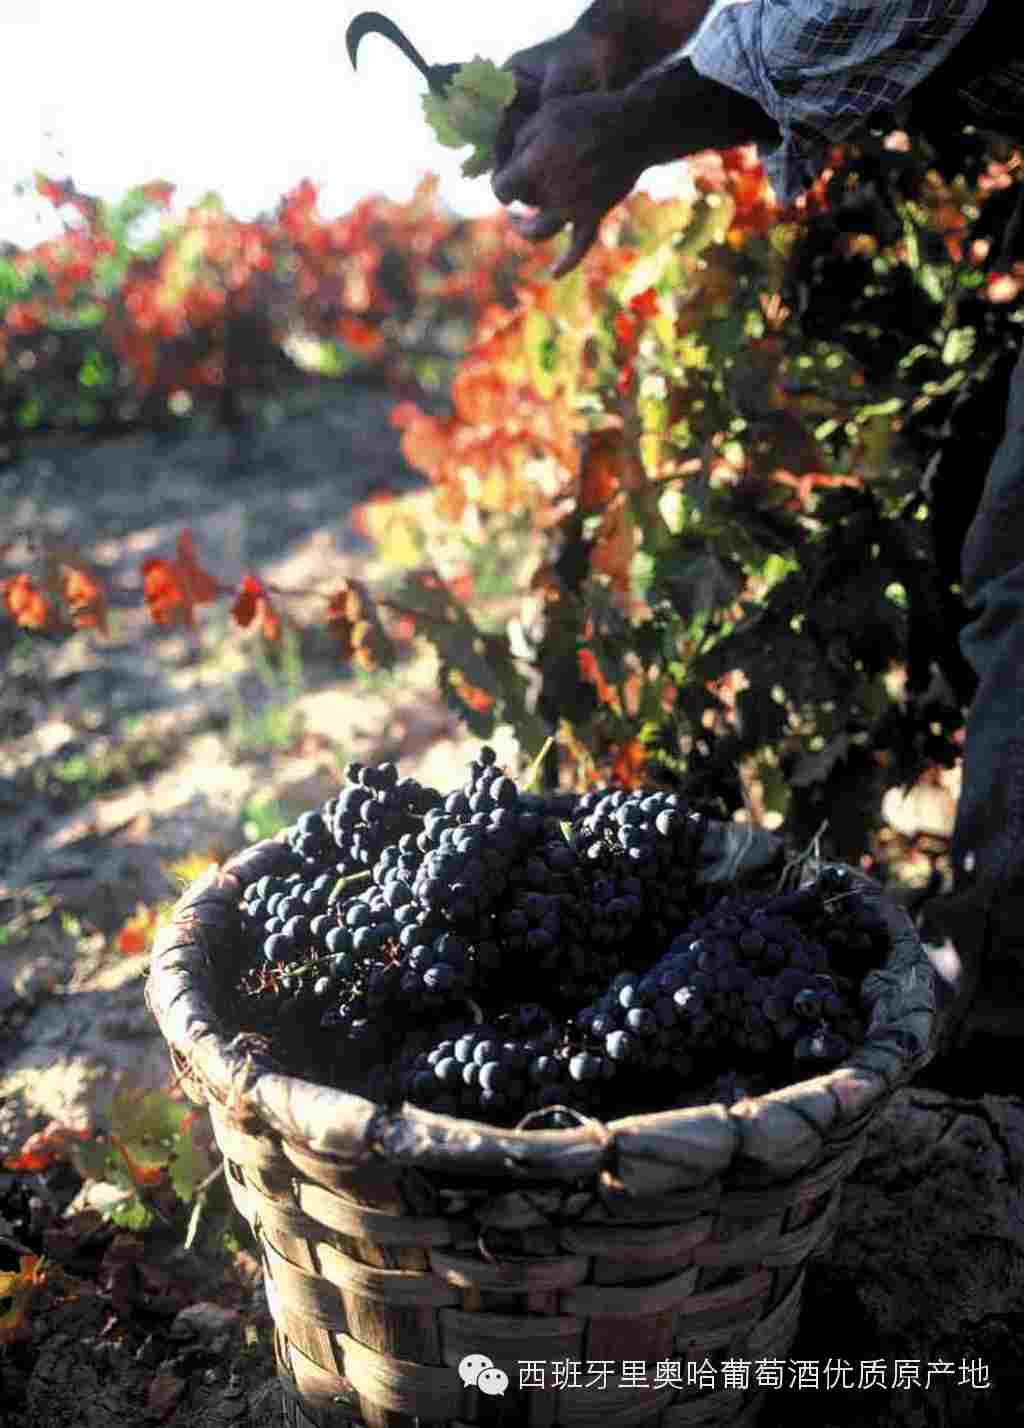 【微言酒语】西班牙里奥哈产区葡萄酒2013年份评级为“良好(GOOD)” 葡萄酒-食品商务网资讯